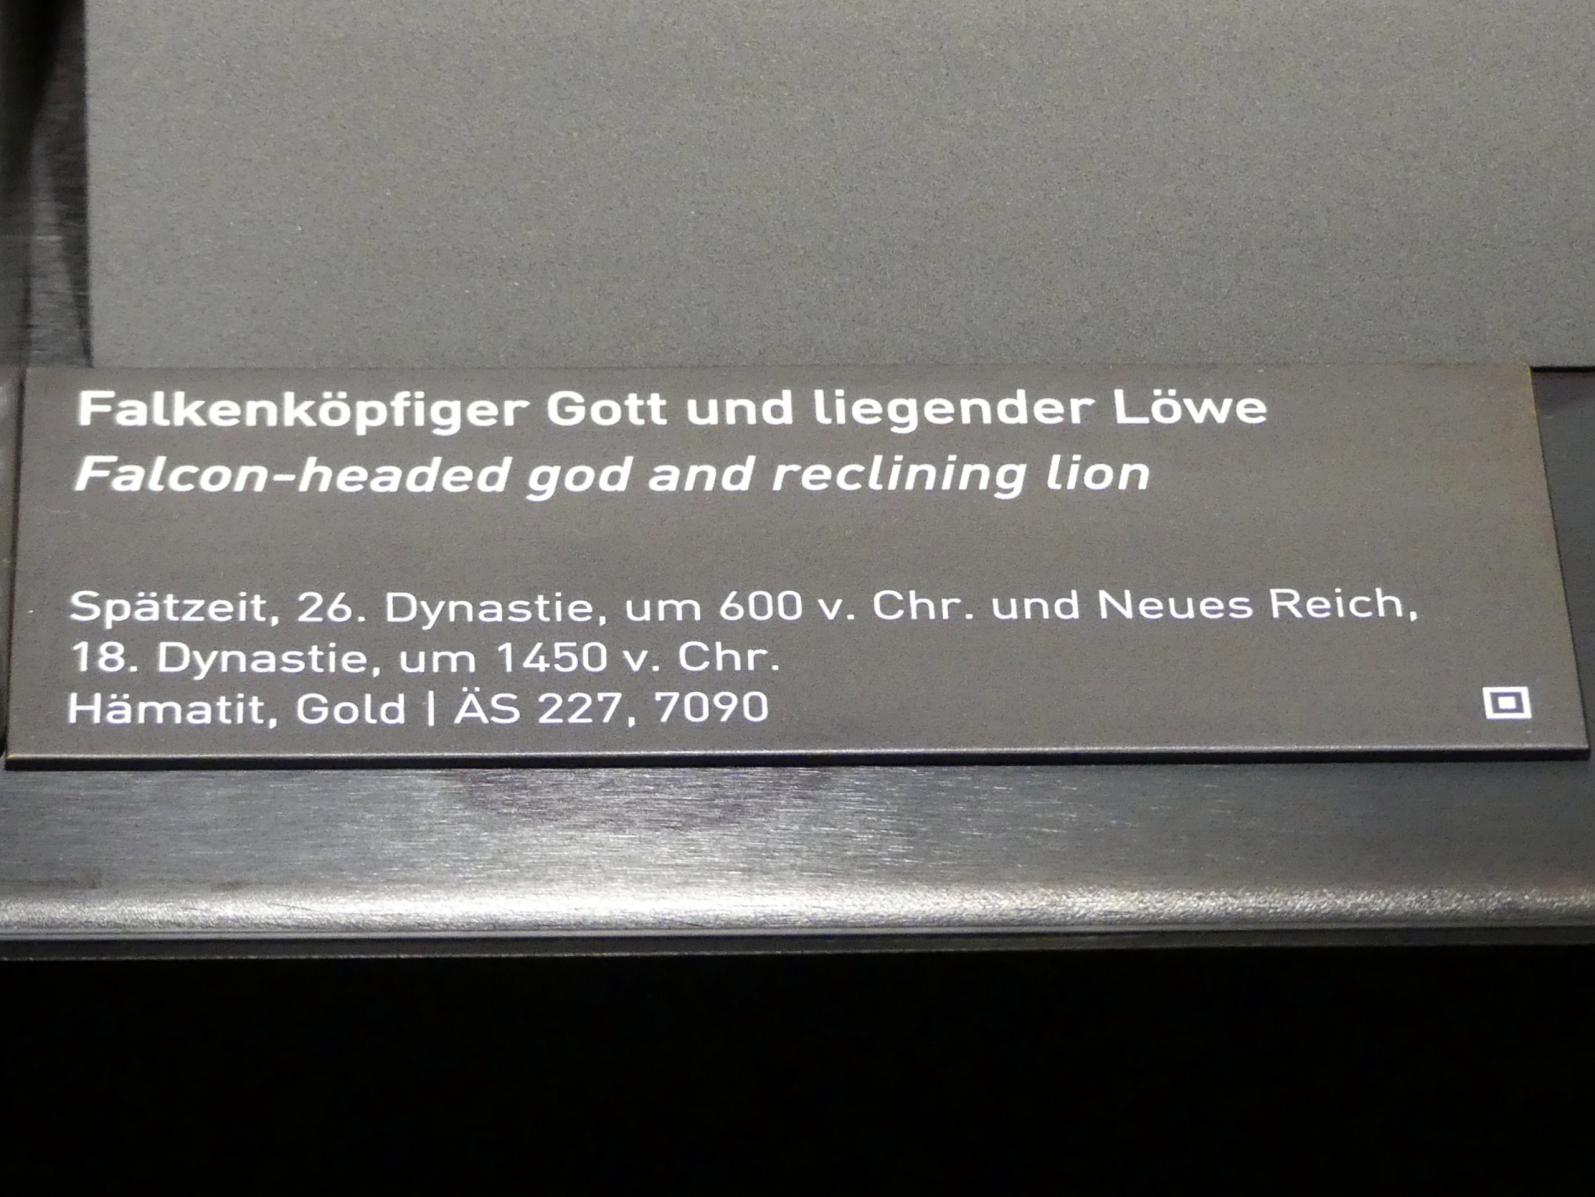 Falkenköpfiger Gott, 26. Dynastie, 526 - 525 v. Chr., 600 v. Chr., Bild 2/2